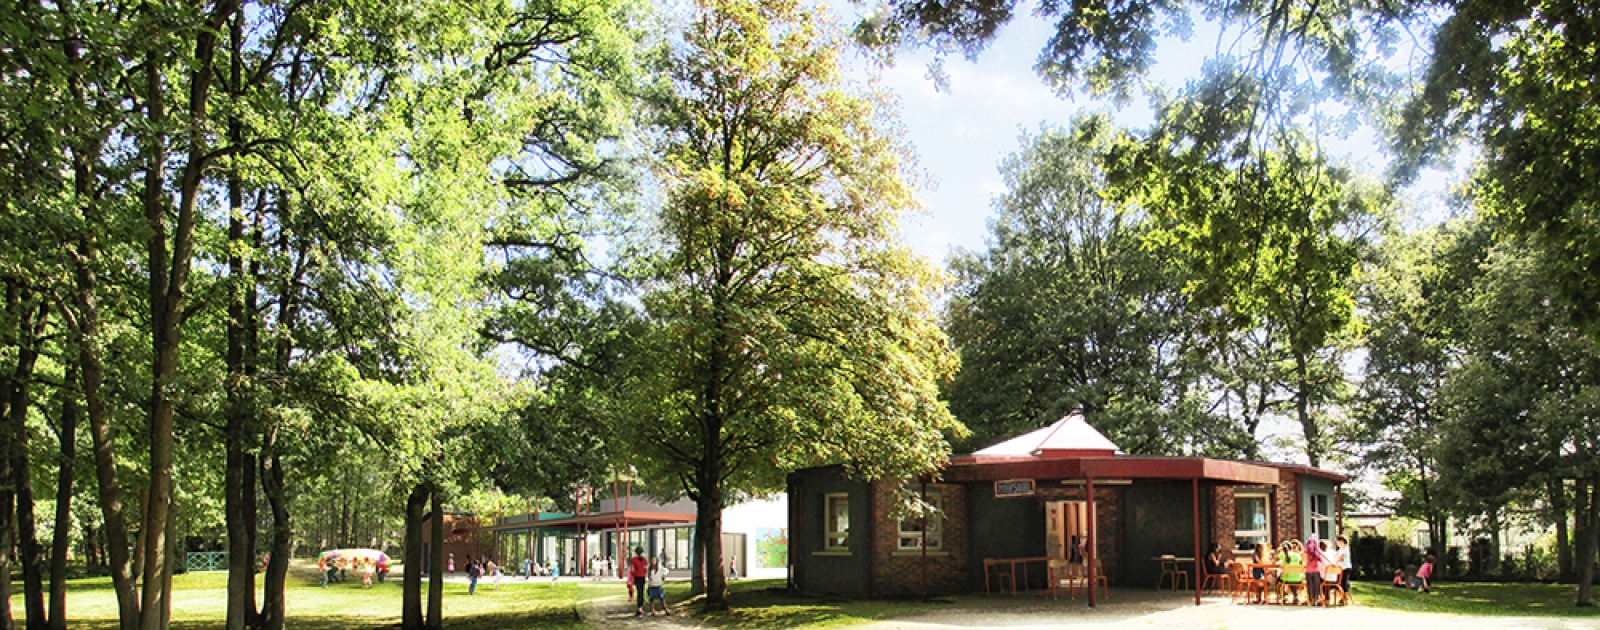 Centre de loisirs du Parc  Villesucy.fr, site officiel de la Ville de